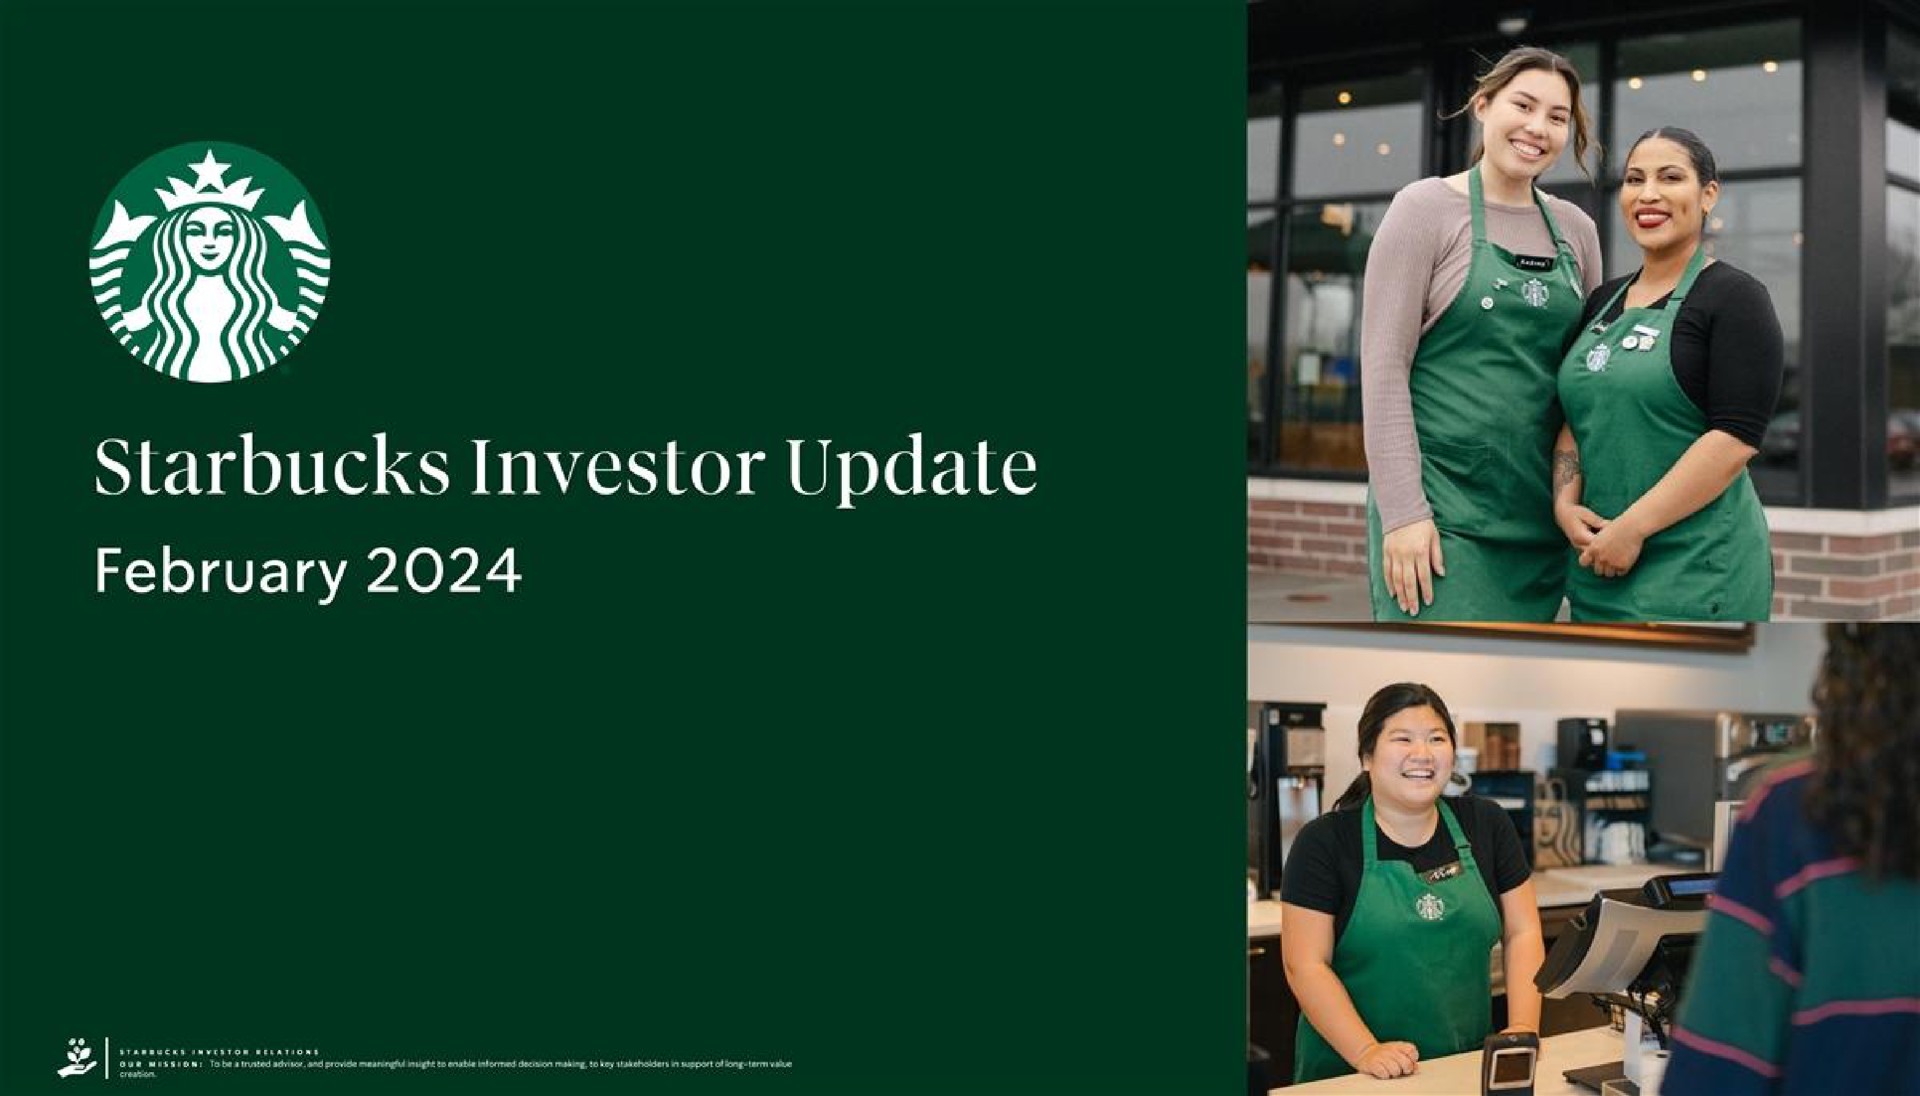 i as investor update | Starbucks